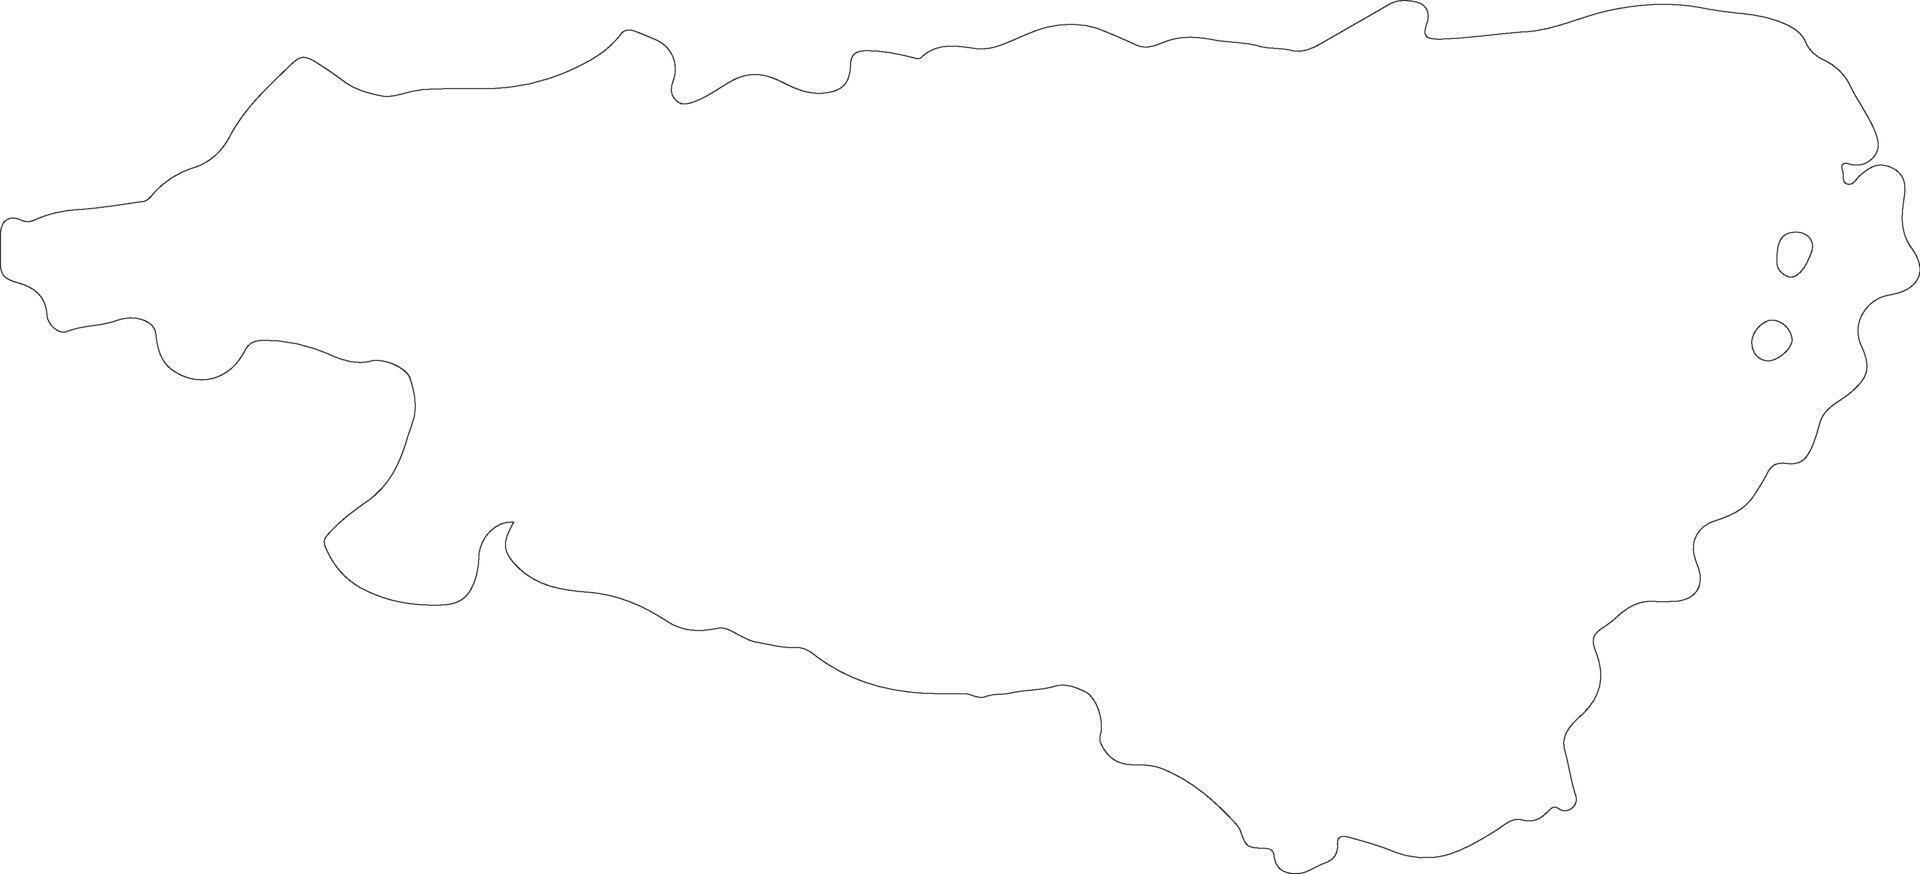 pirineos atlánticos Francia contorno mapa vector